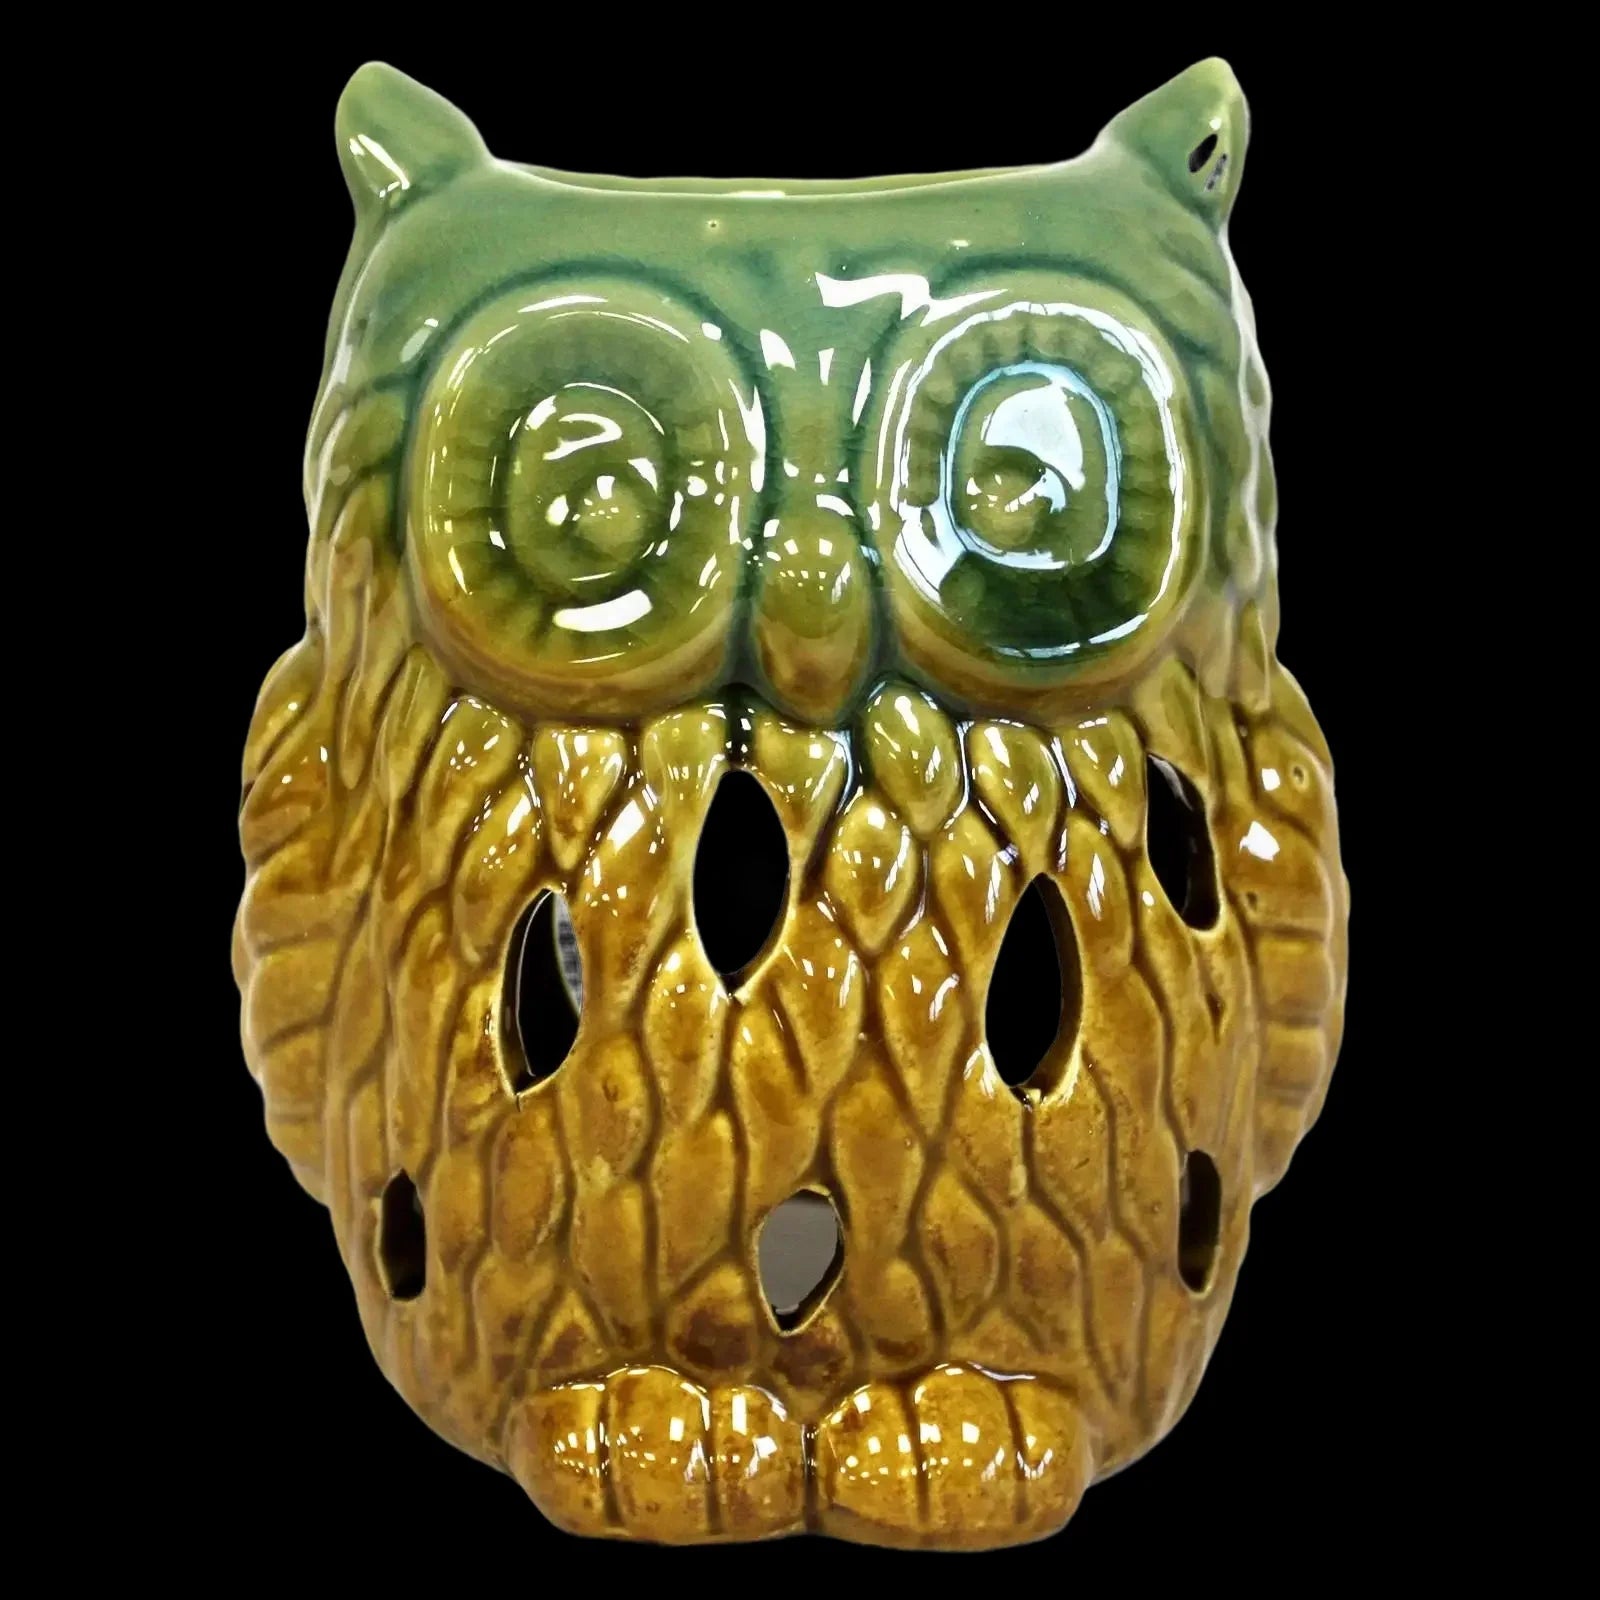 Classic Owl Ceramic Oil Burners In a Rustic Terracotta